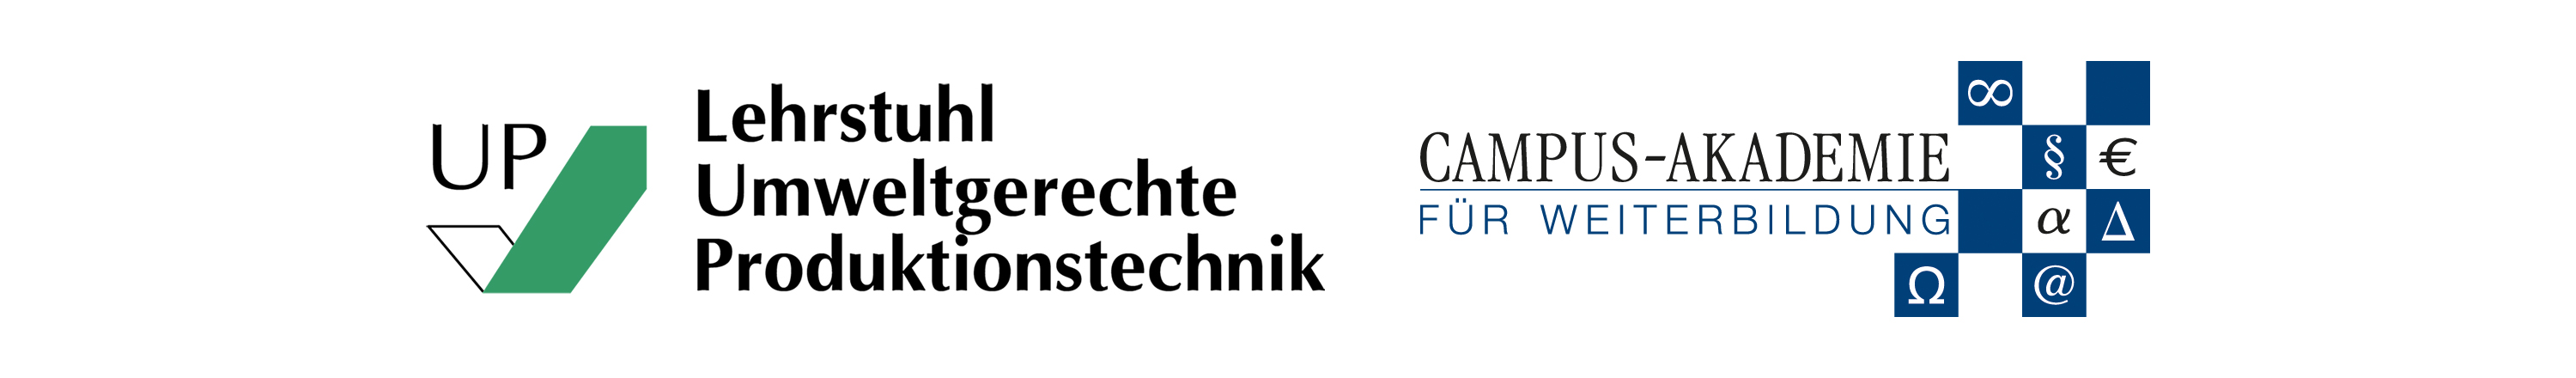 Logo Lehrstuhl Umweltgerechte Produktionstechnik und Logo Campus Akademie Universität Bayreuth